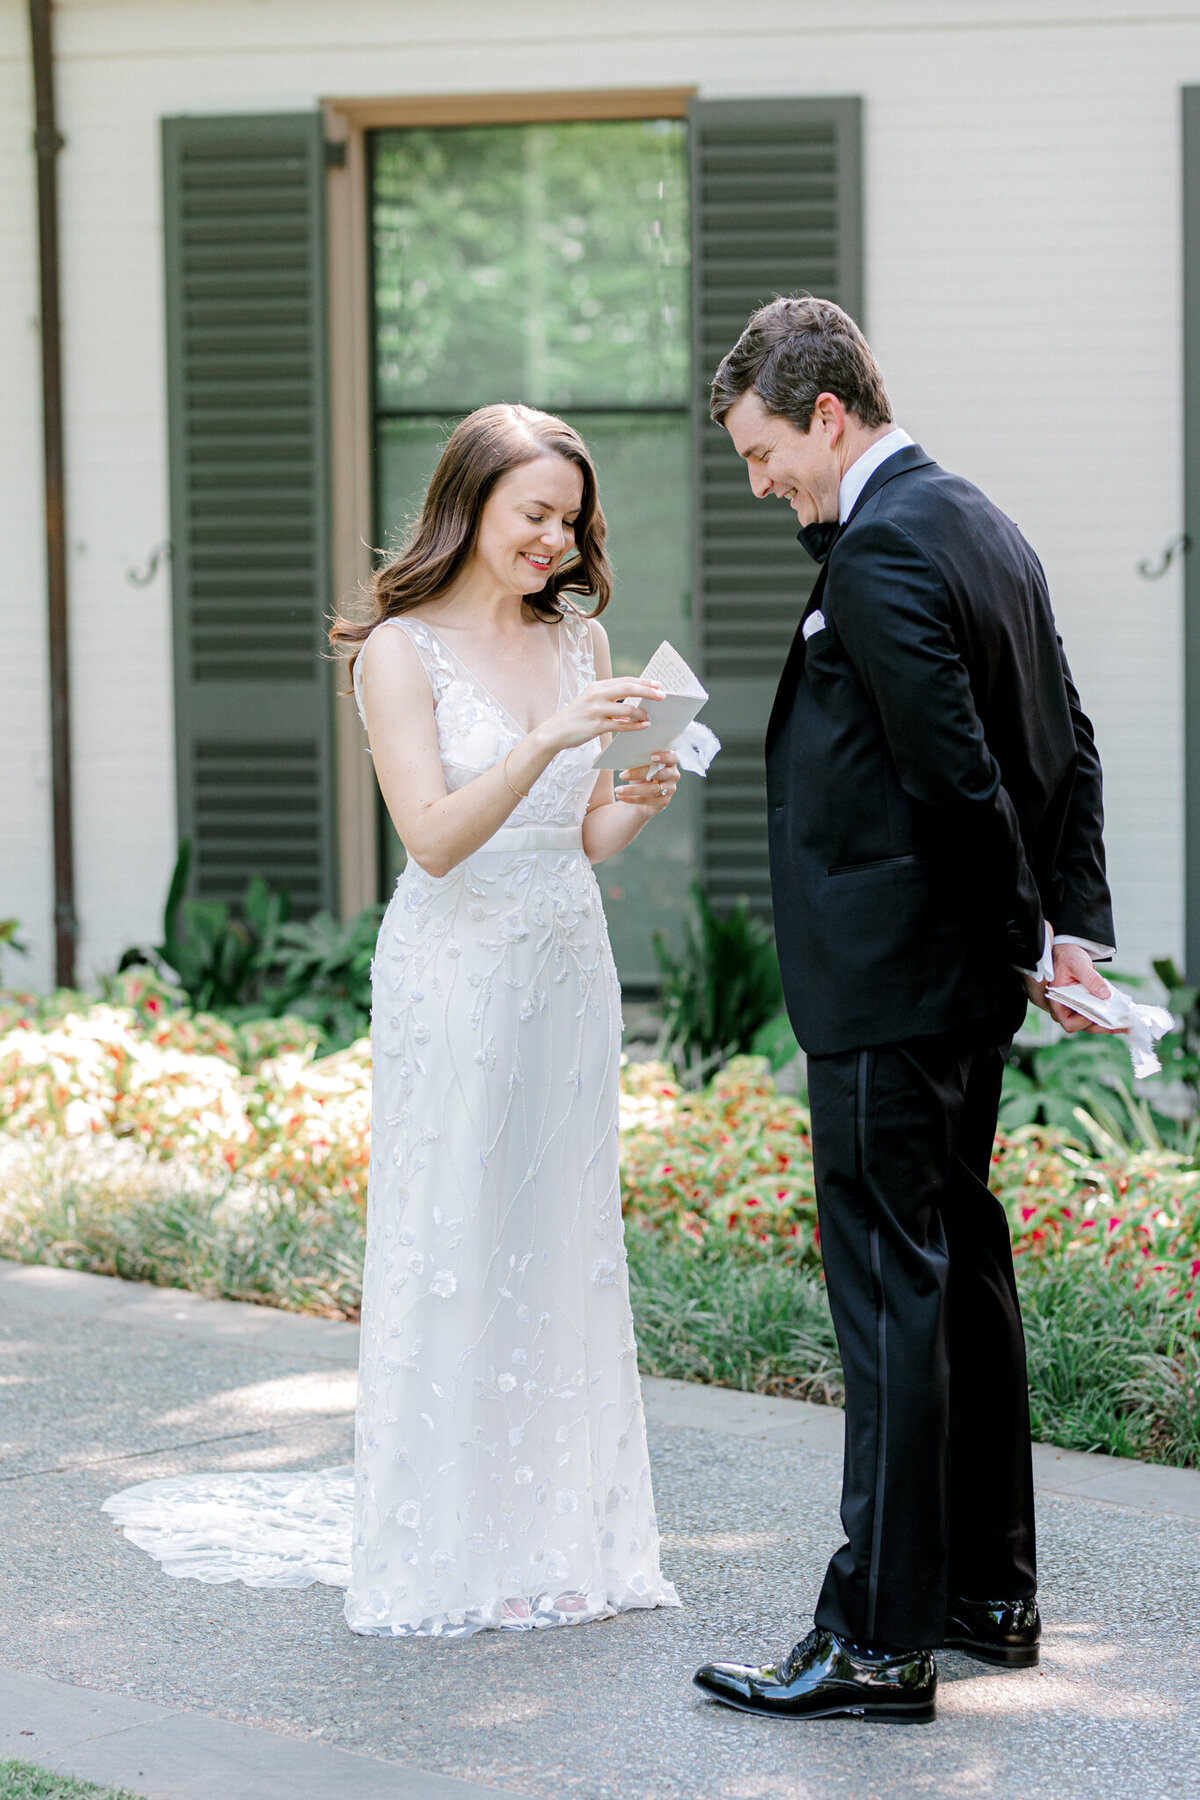 Gena & Matt's Wedding at the Dallas Arboretum | Dallas Wedding Photographer | Sami Kathryn Photography-72